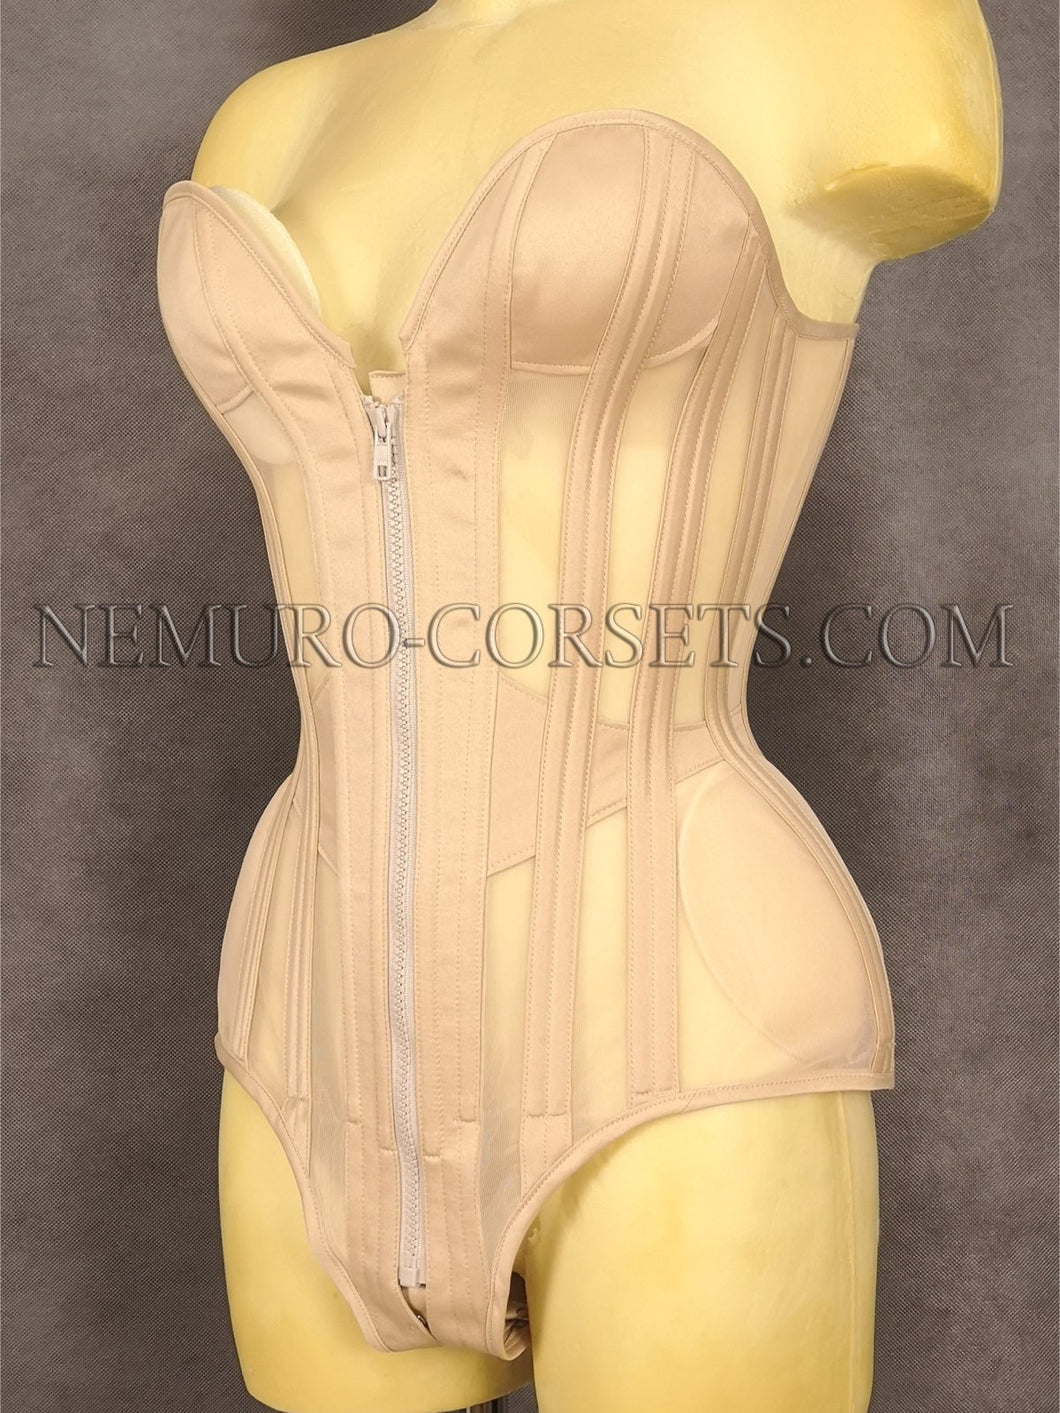 https://nemuro-corsets.com/cdn/shop/products/IMG_20211017_190826_530x@2x.jpg?v=1673013089